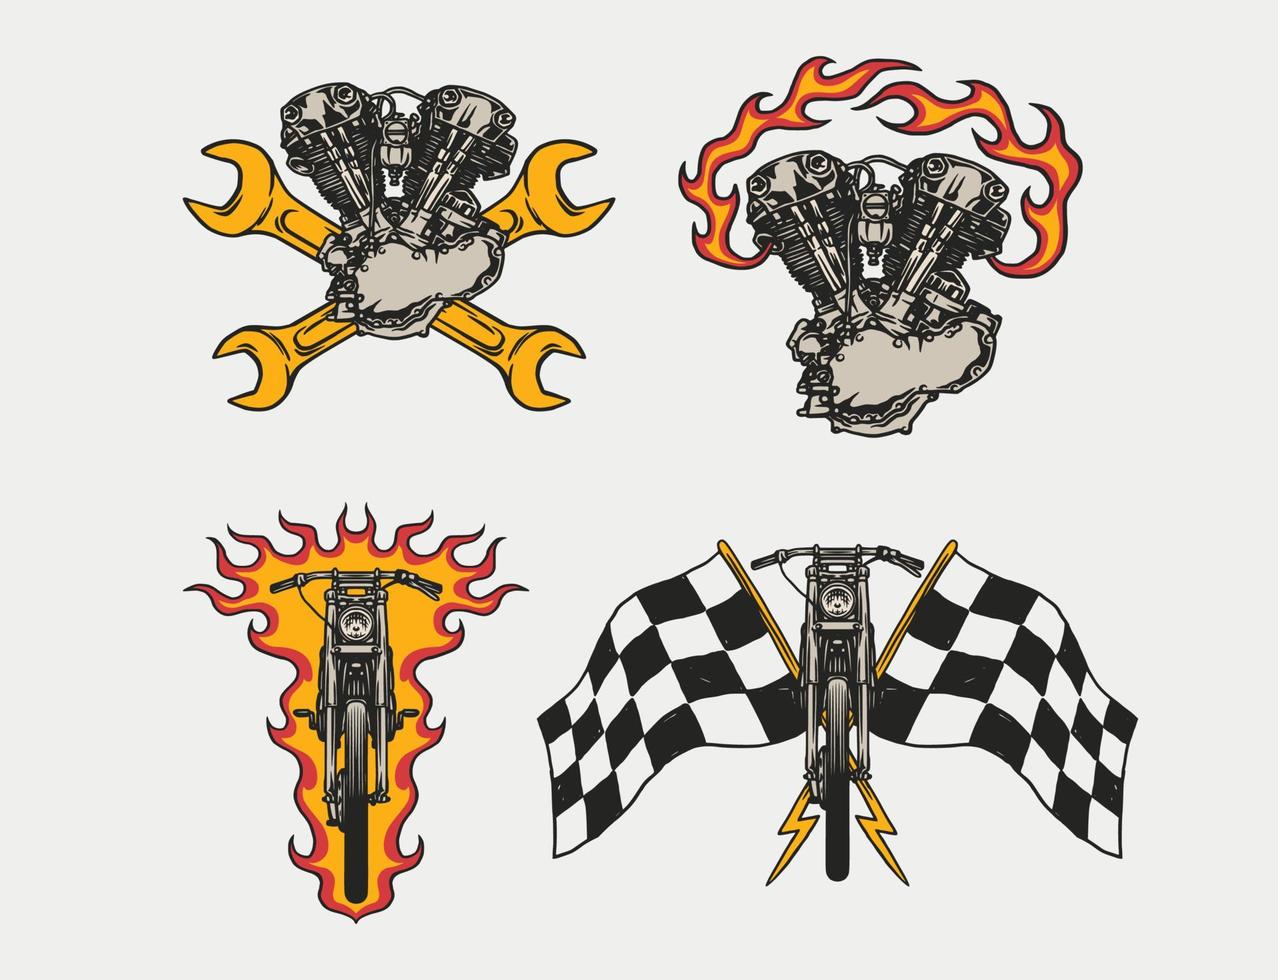 satz von handgezeichneten motorrad- und garagenlogoabzeichen im vintage-stil vektor